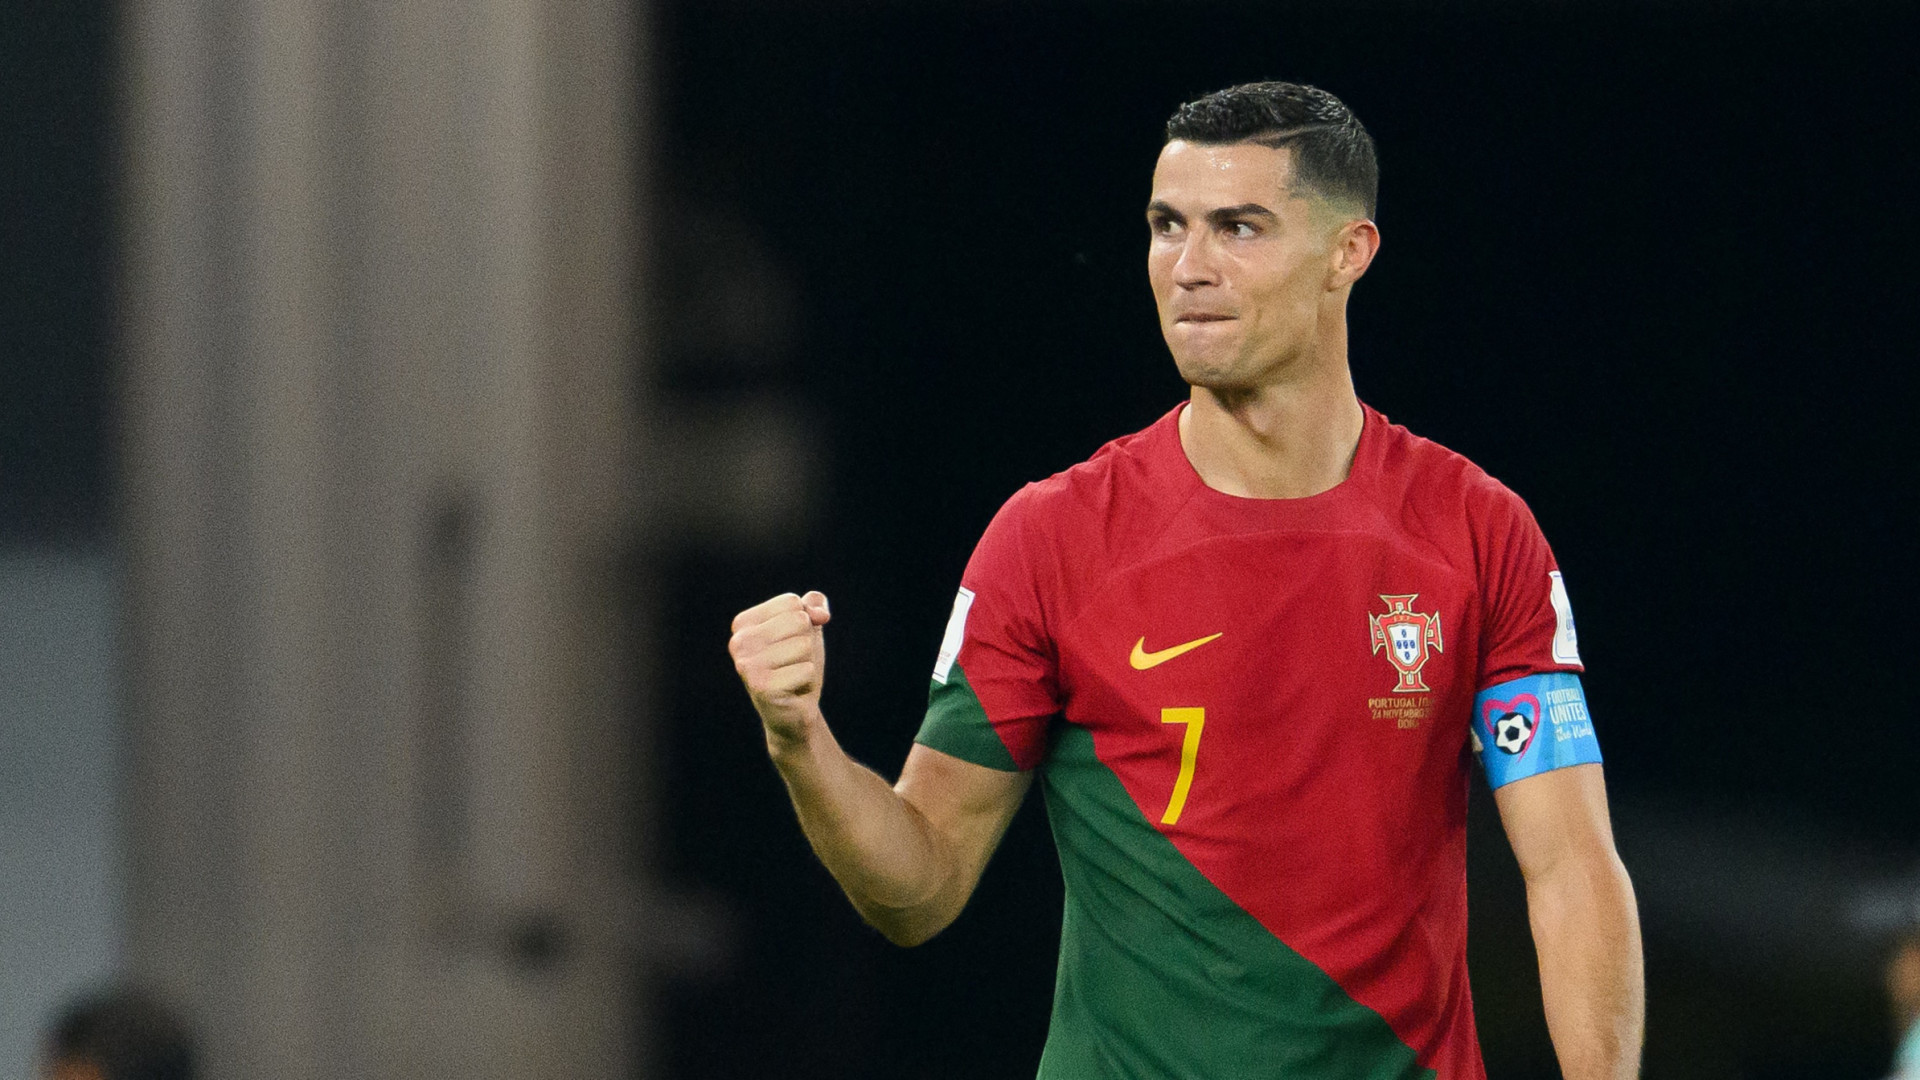 Cristiano Ronaldo está prestes a bater recorde de mais jogos por seleção:  Me deixaria orgulhoso, eliminatórias da eurocopa